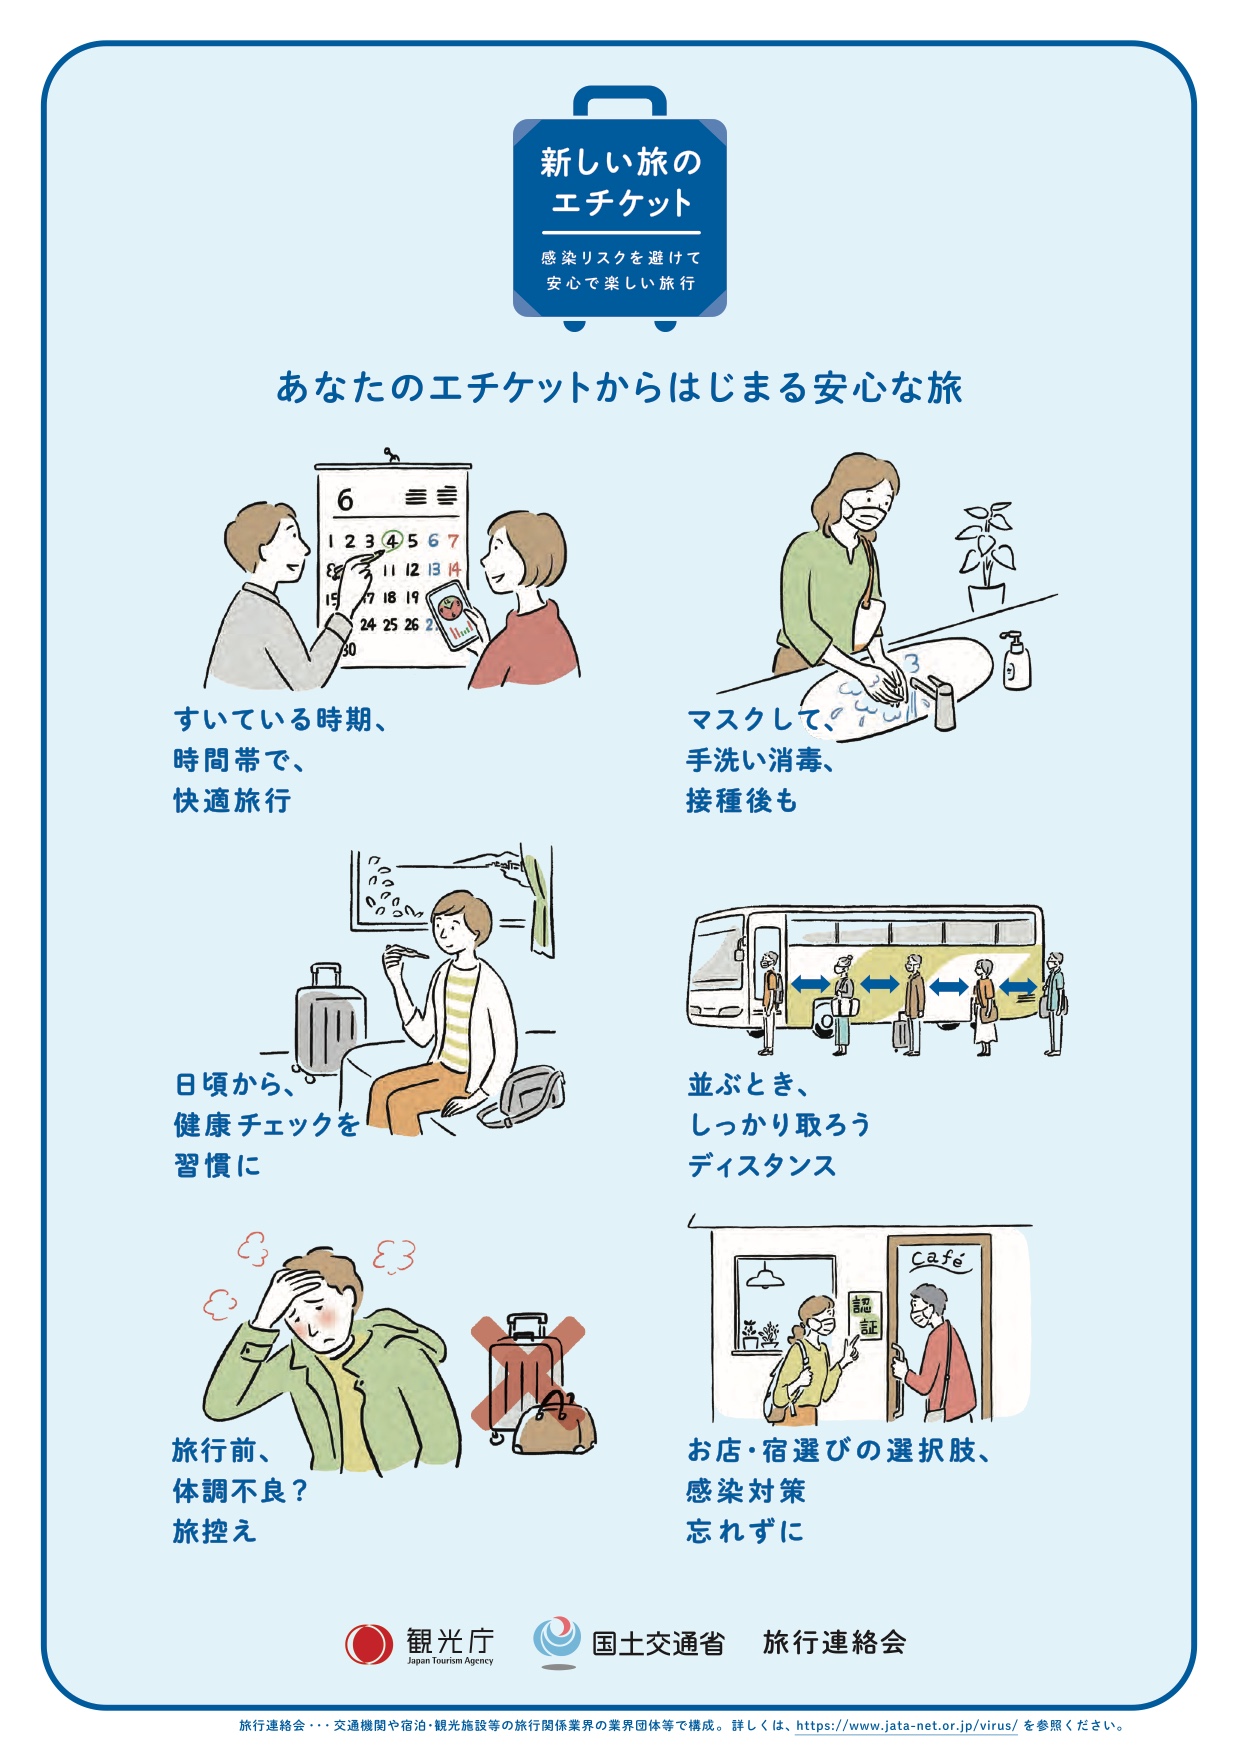 Allgemeine Tipps: Die Reisezeit gut wählen, die Gesundheit im Auge behalten und die Schutzmassnahmen einhalten.  | Tourismusbehörde Japan